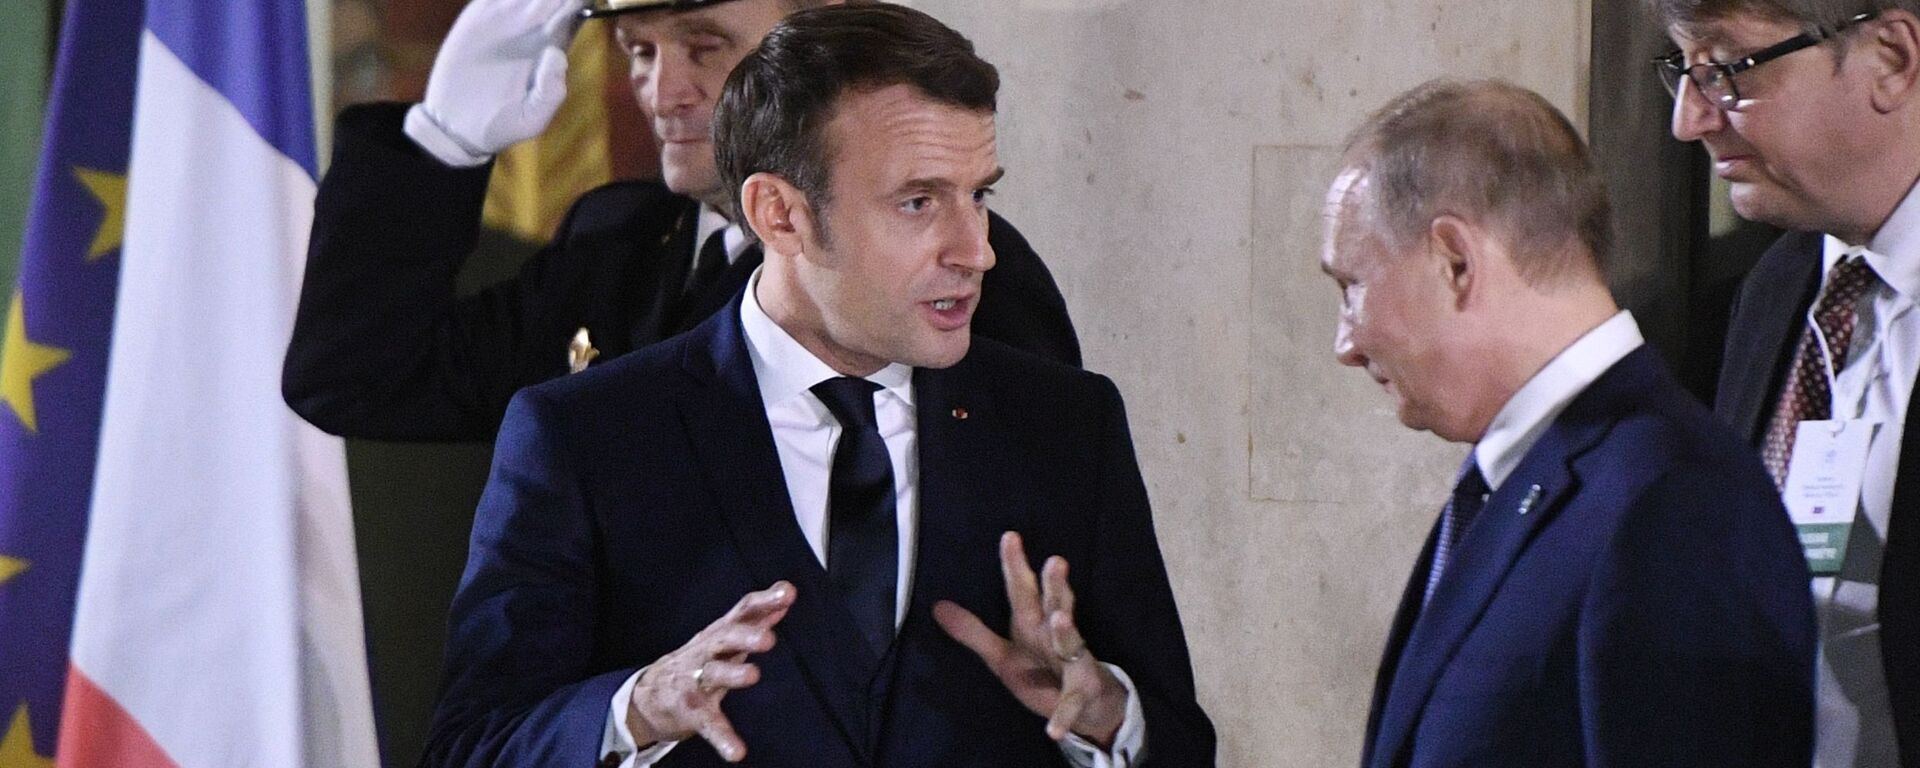 Tổng thống Nga Vladimir Putin và Tổng thống Pháp Emmanuel Macron sau cuộc gặp gỡ theo  “định dạng Normandy” (09.12.2019).  - Sputnik Việt Nam, 1920, 20.08.2021